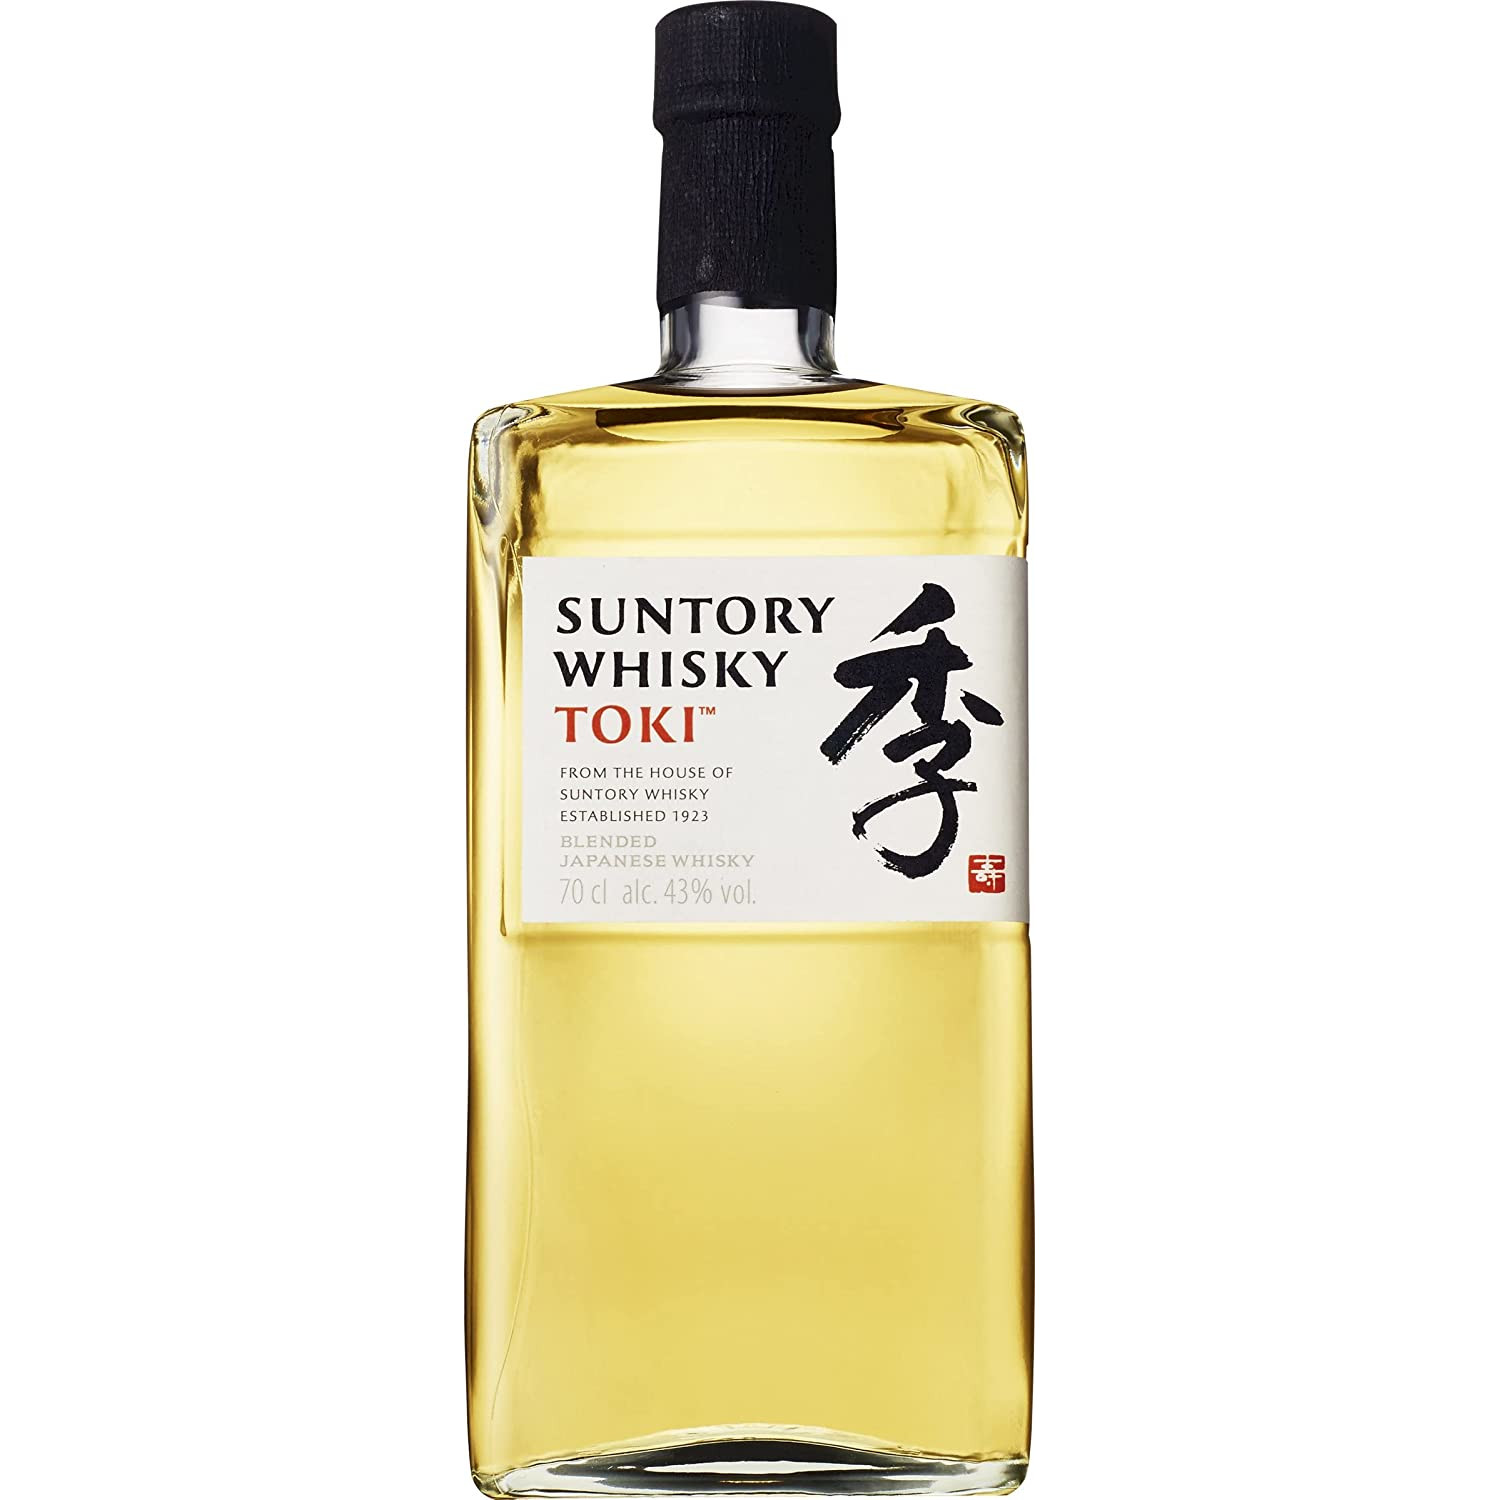 SUNTORY WHISKY TOKI Blended Japanese Whisky 43% 0,7L – Japonia